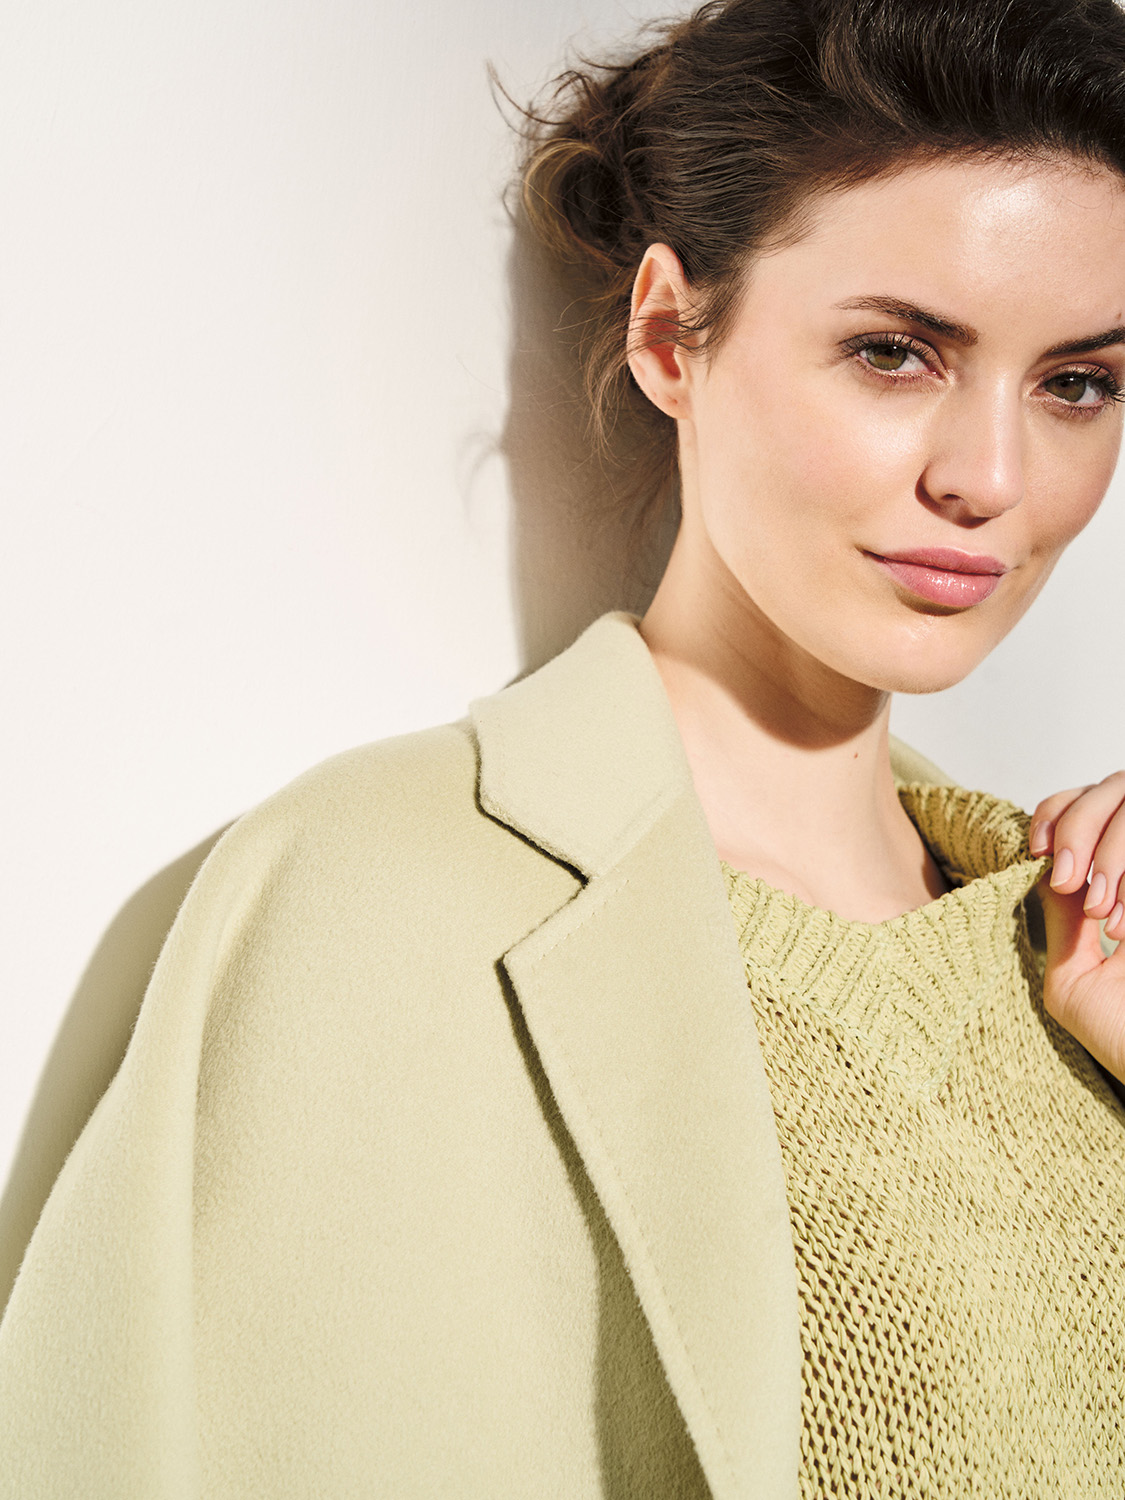 Bändchengarn-Pullover aus Baumwoll-Mix   Farbe: lila Größe: XS